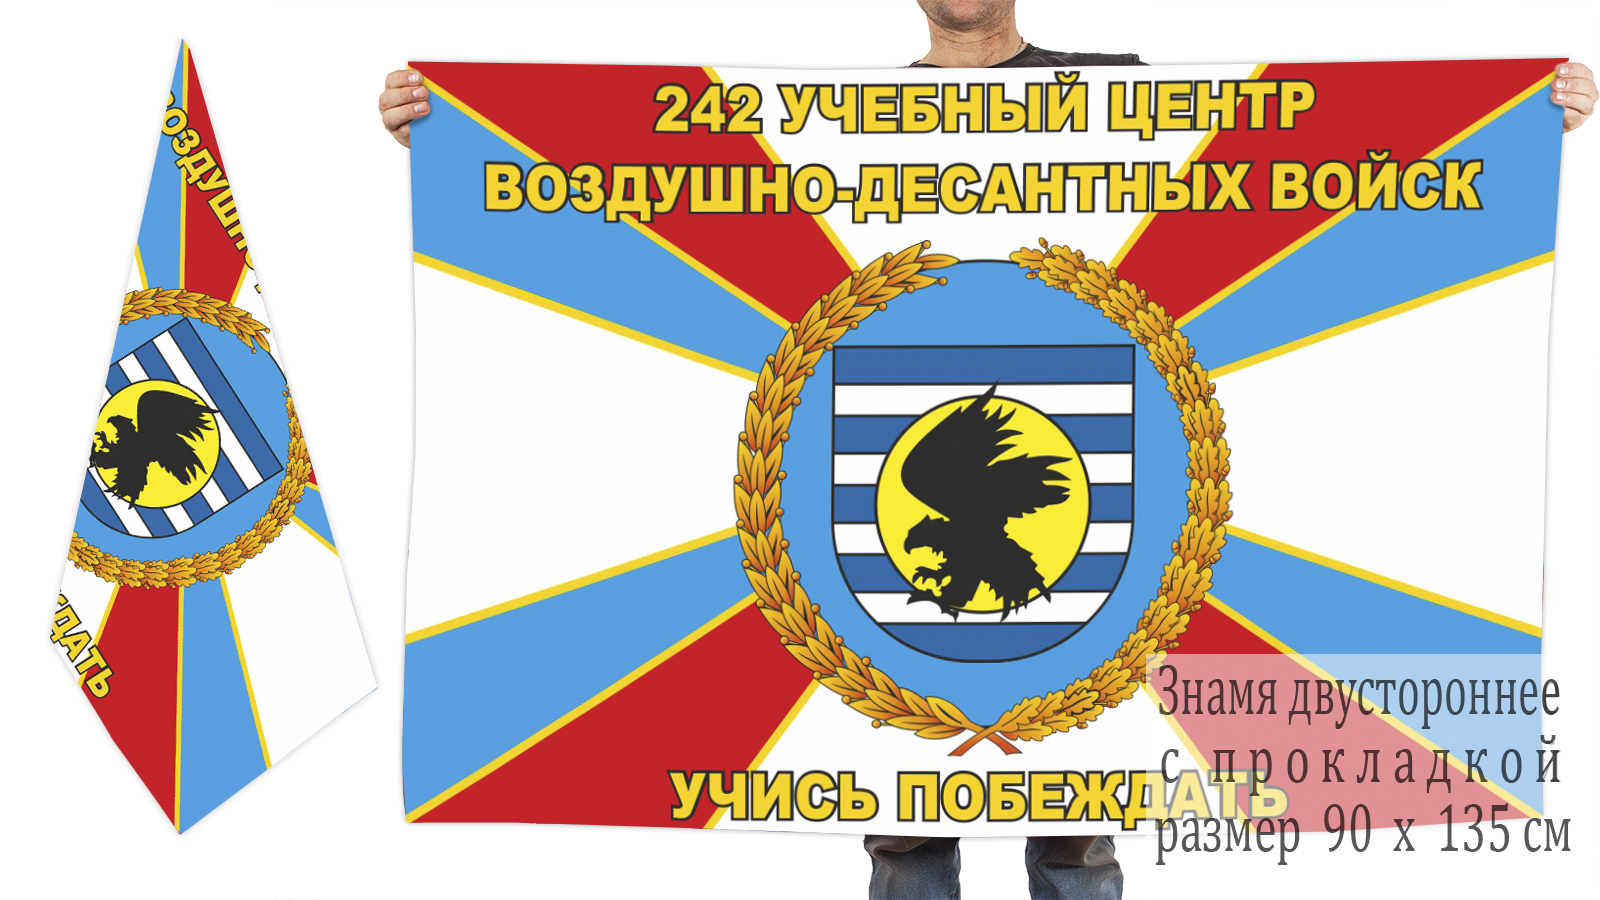 Двусторонний флаг 242-го Учебного центра ВДВ заказать в розницу или оптом